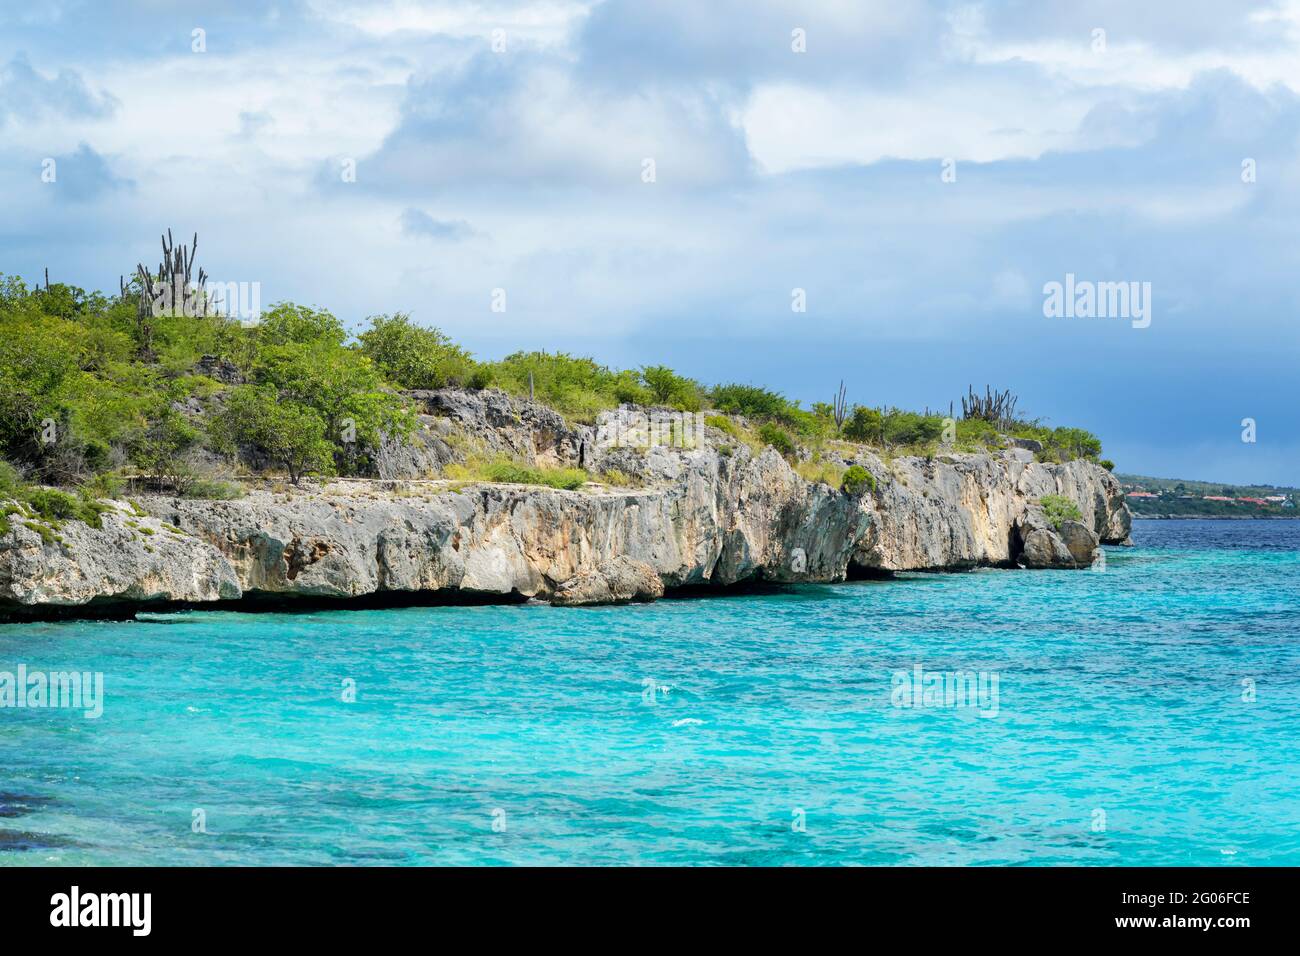 Typische Küste von Bonaire, niederländische Karibik. Stockfoto